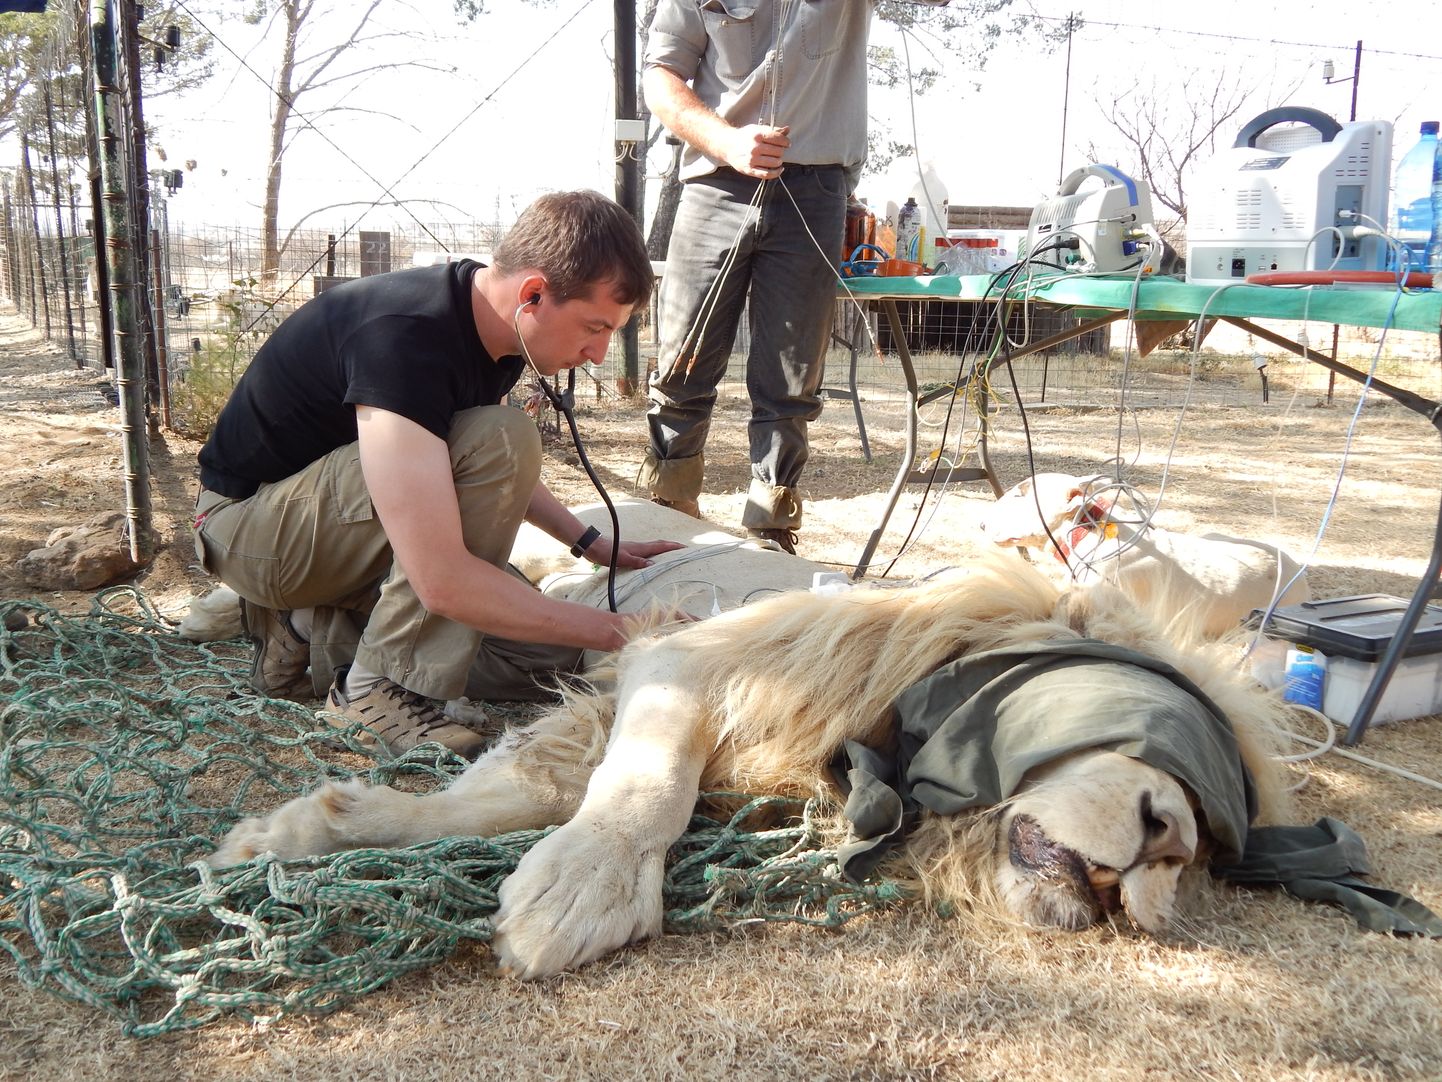 Eesti Maaülikooli doktorant Aleksandr Semjonov viis uuringu läbi Lõuna-Aafrika Vabariigis tehistingimustes peetavatel loomadel.